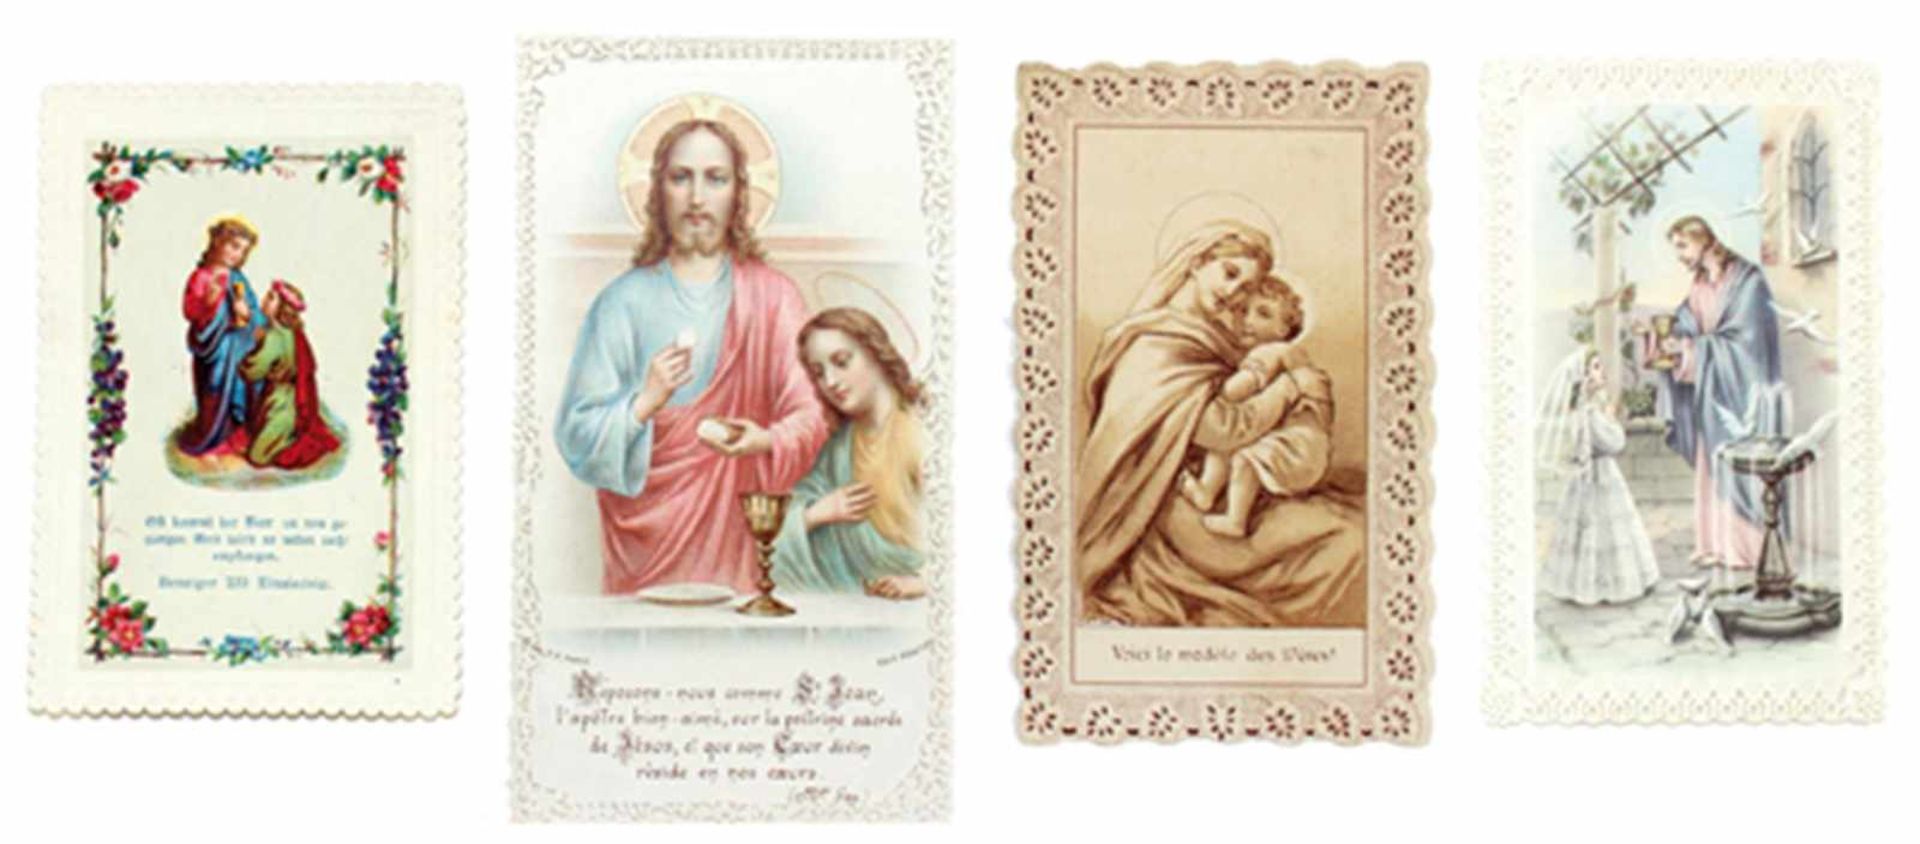 Andachtsbilder.Konvolut von ca. 30.000 Andachts- u. Heiligenbildern u.a. religiösen Darstellung - Bild 3 aus 10